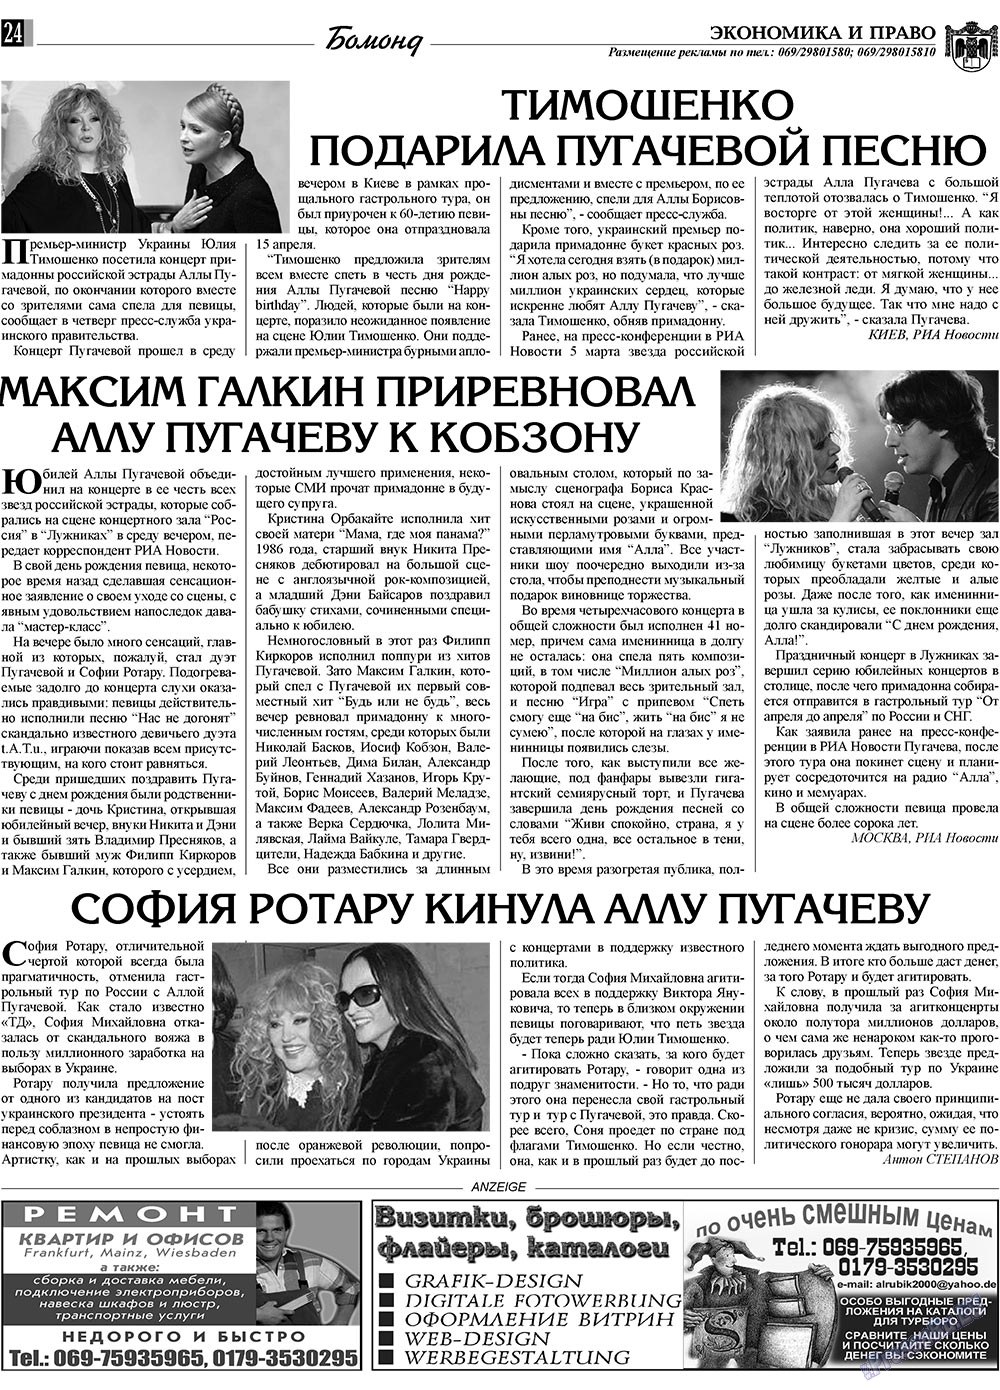 Экономика и право, газета. 2009 №5 стр.24